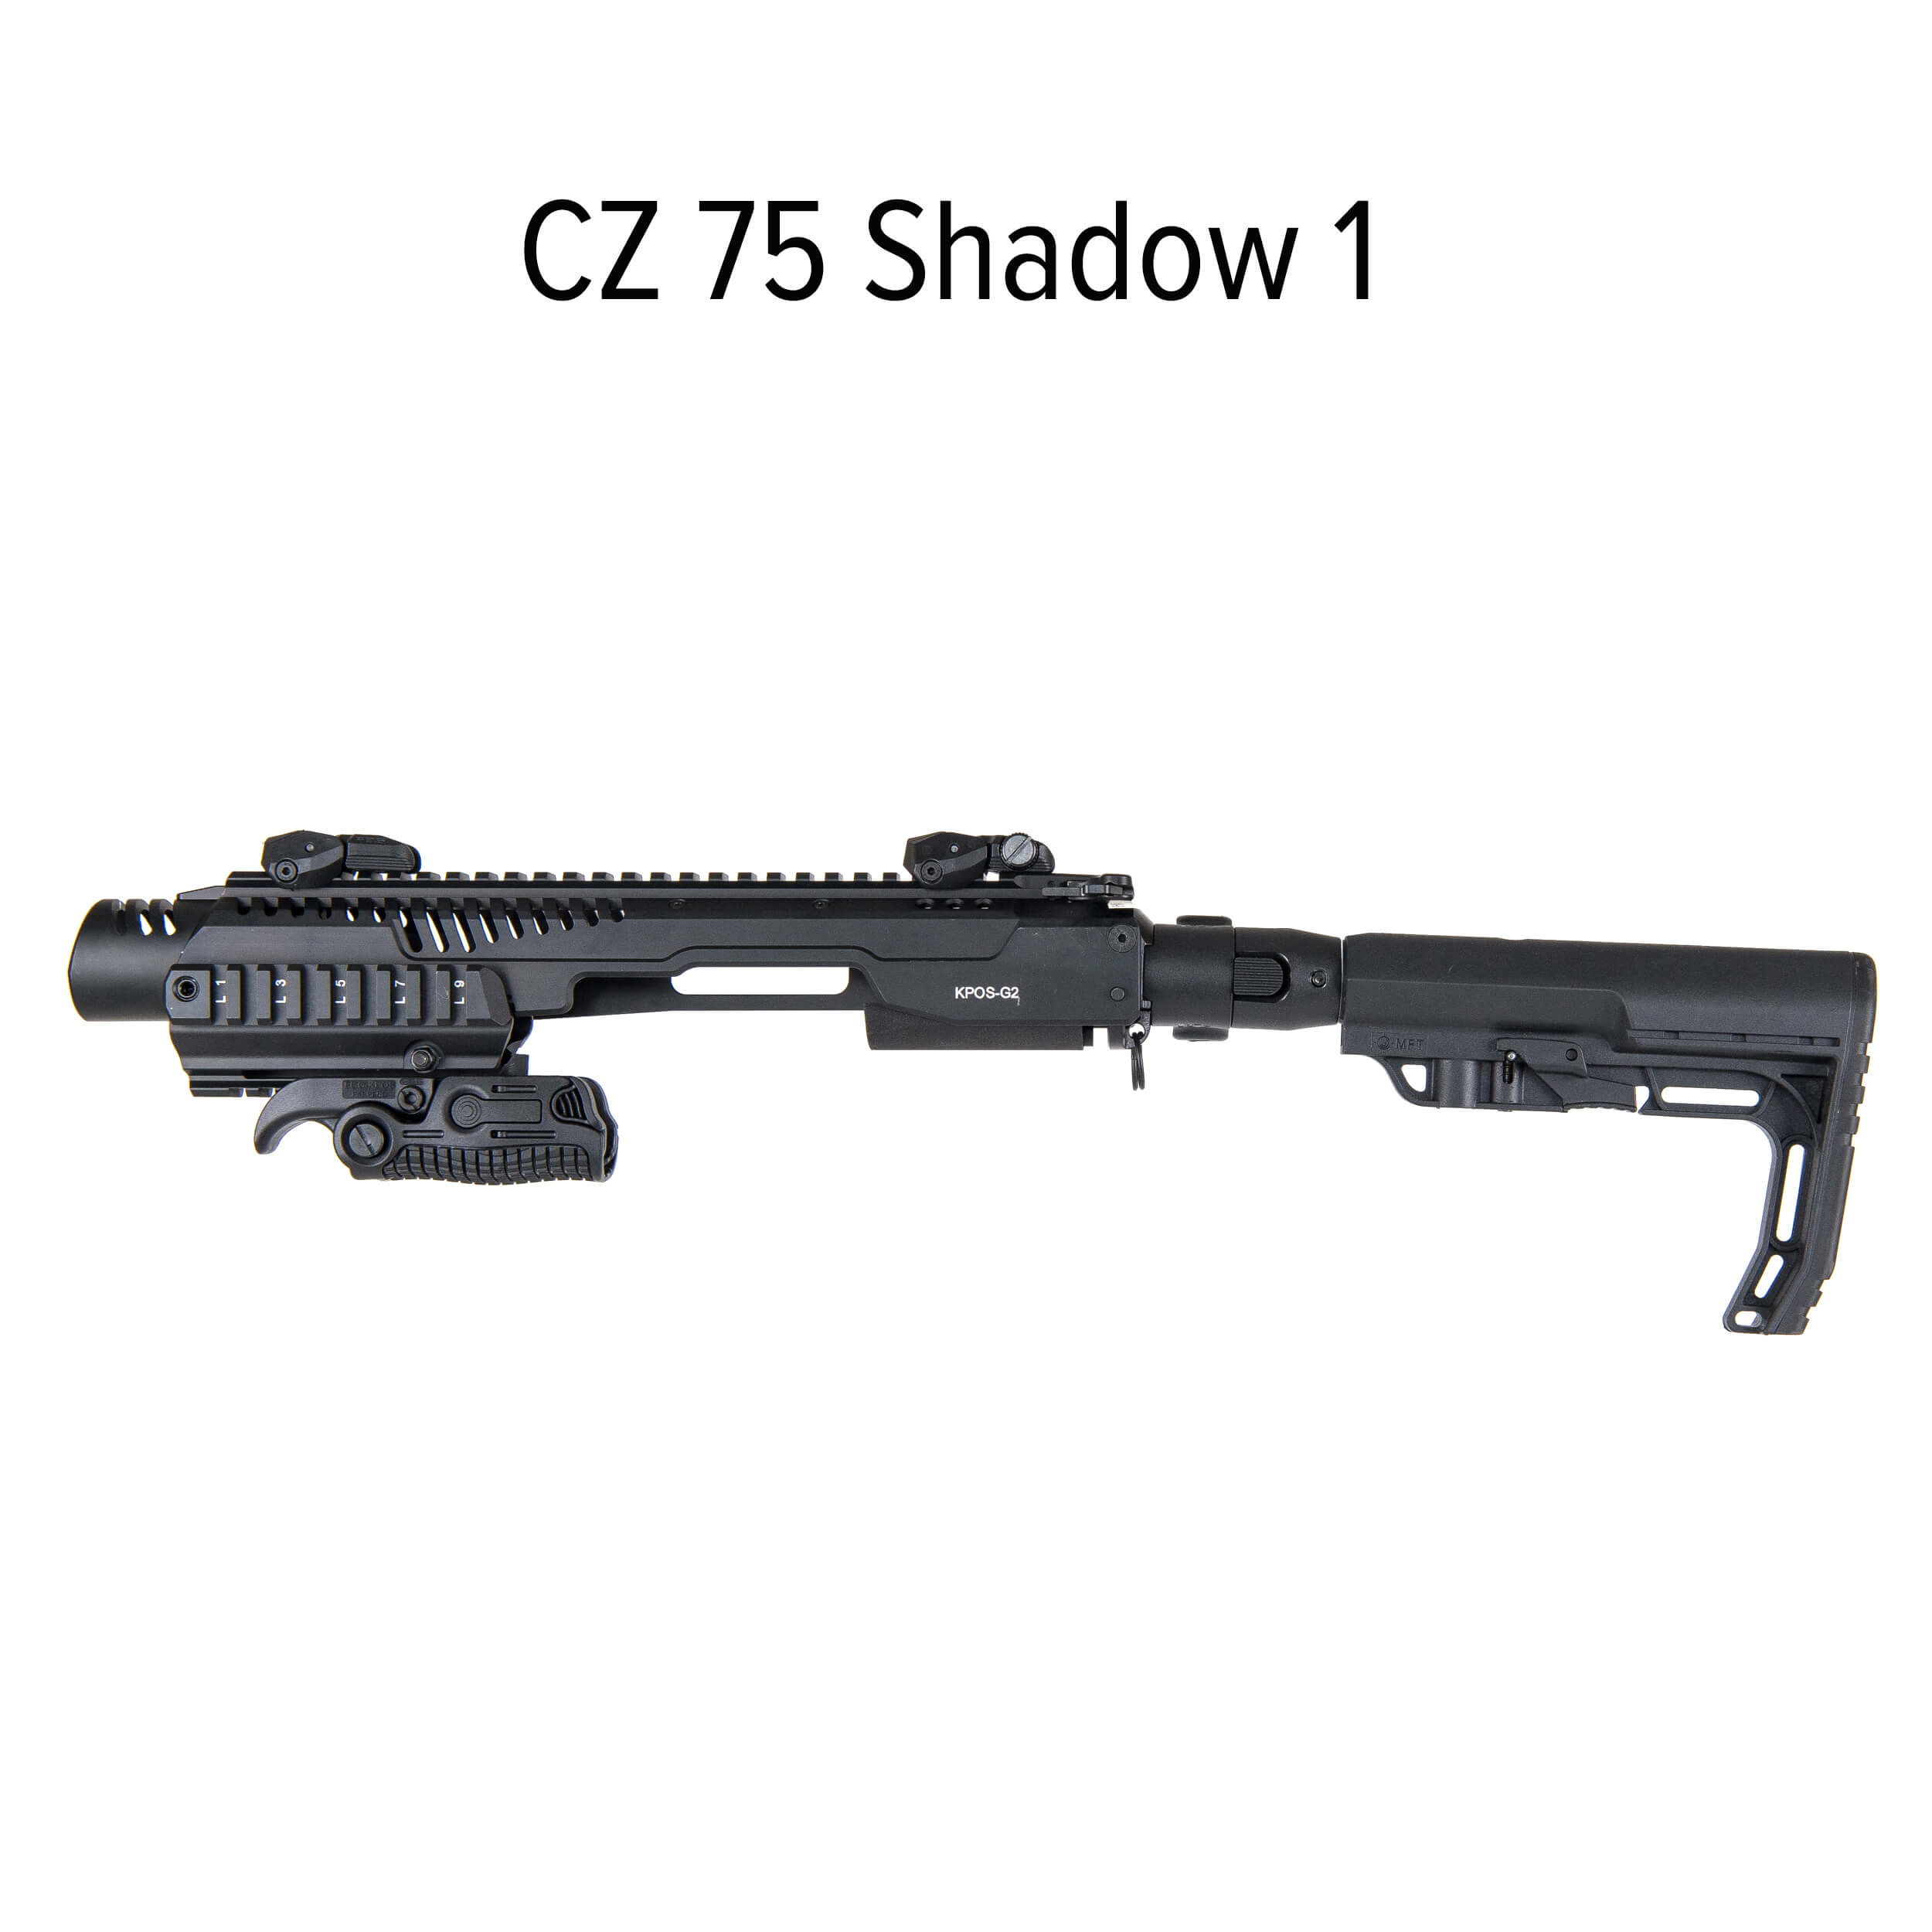 KPOS G2C CZ 75 SP-01 / CZ Shadow 1 